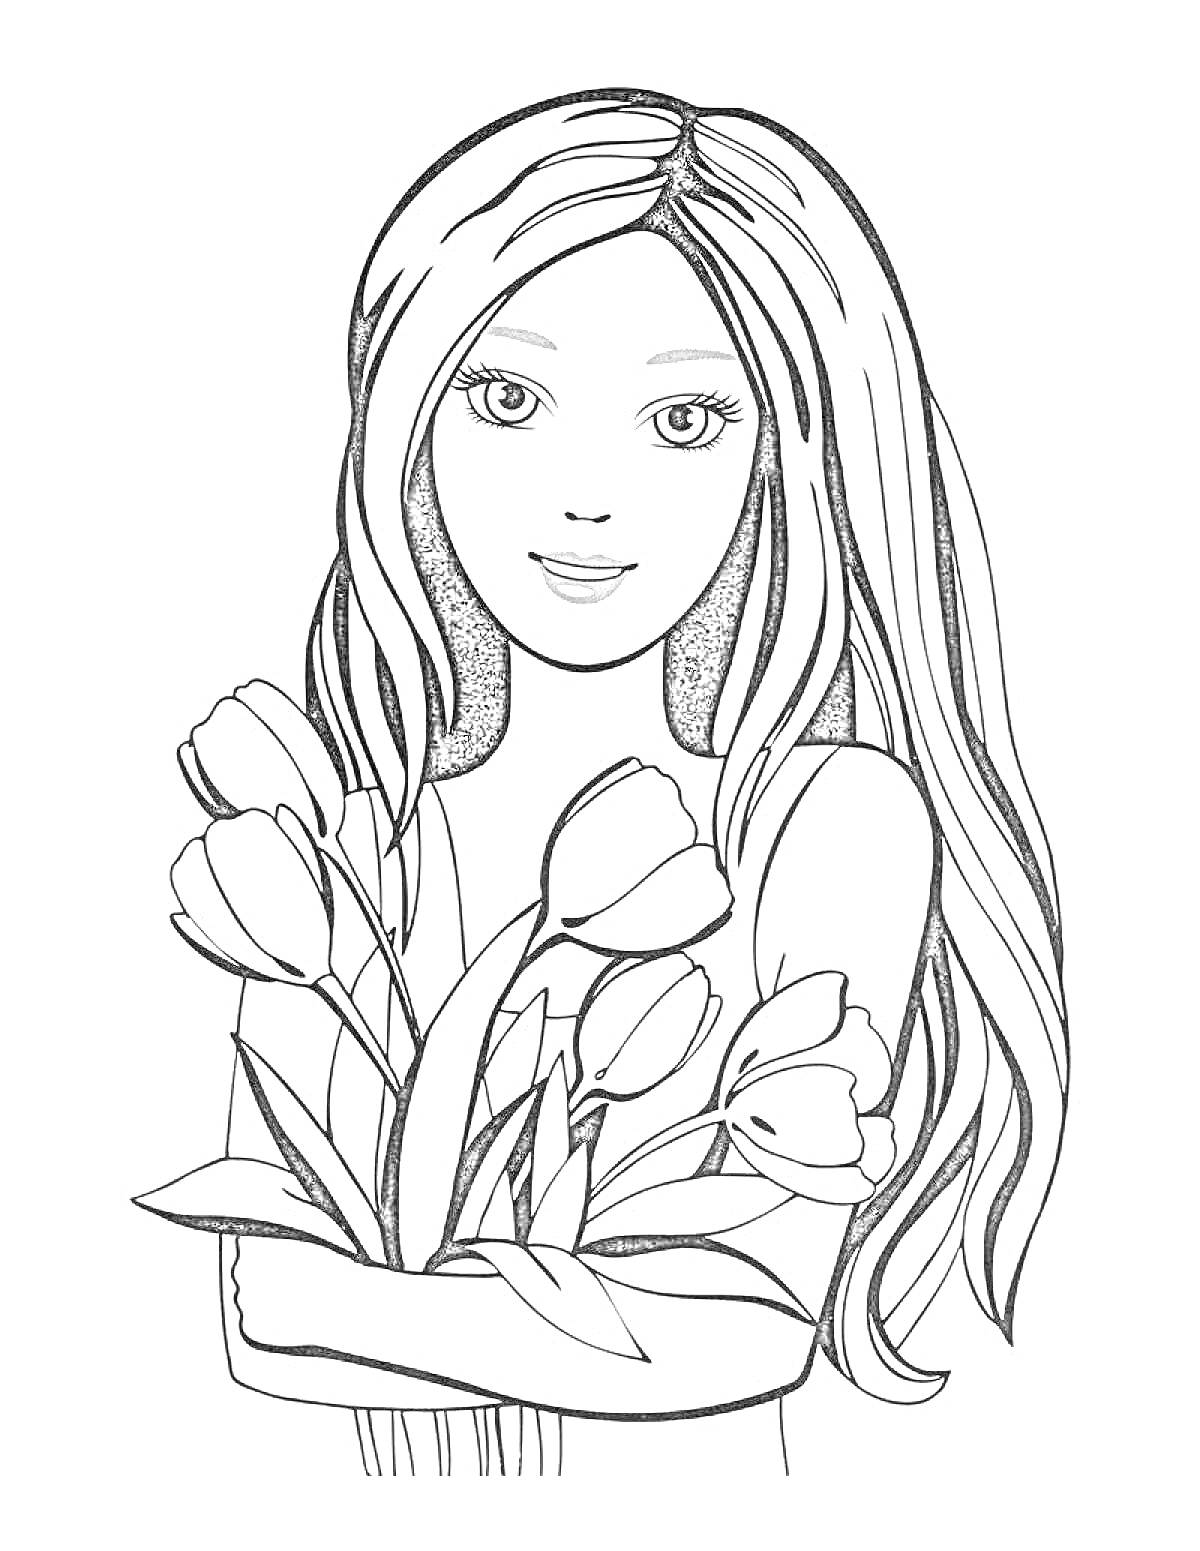 Девушка с длинными волосами, держащая букет тюльпанов